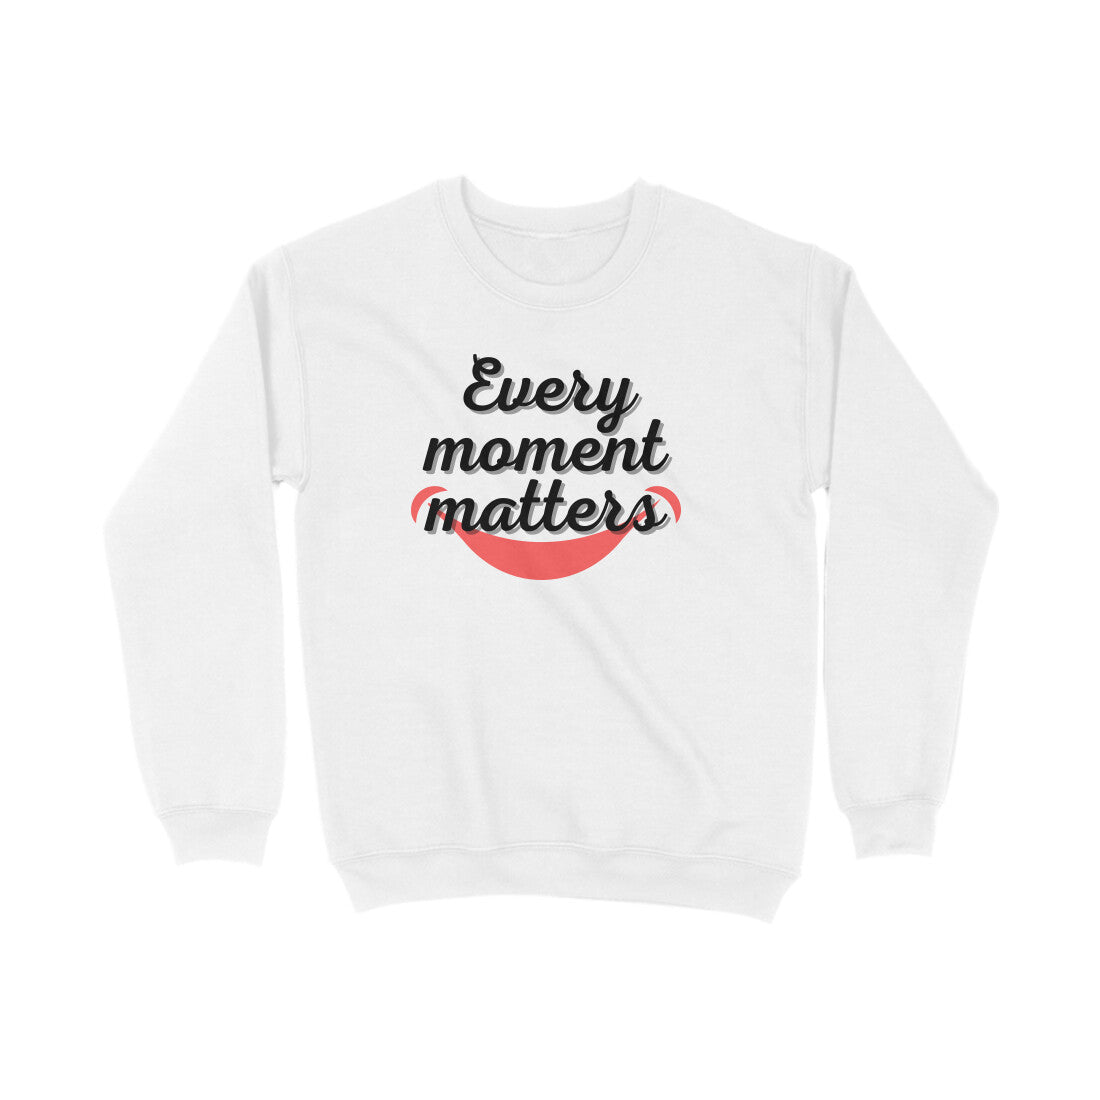 Every Moment Matters Sweatshirts